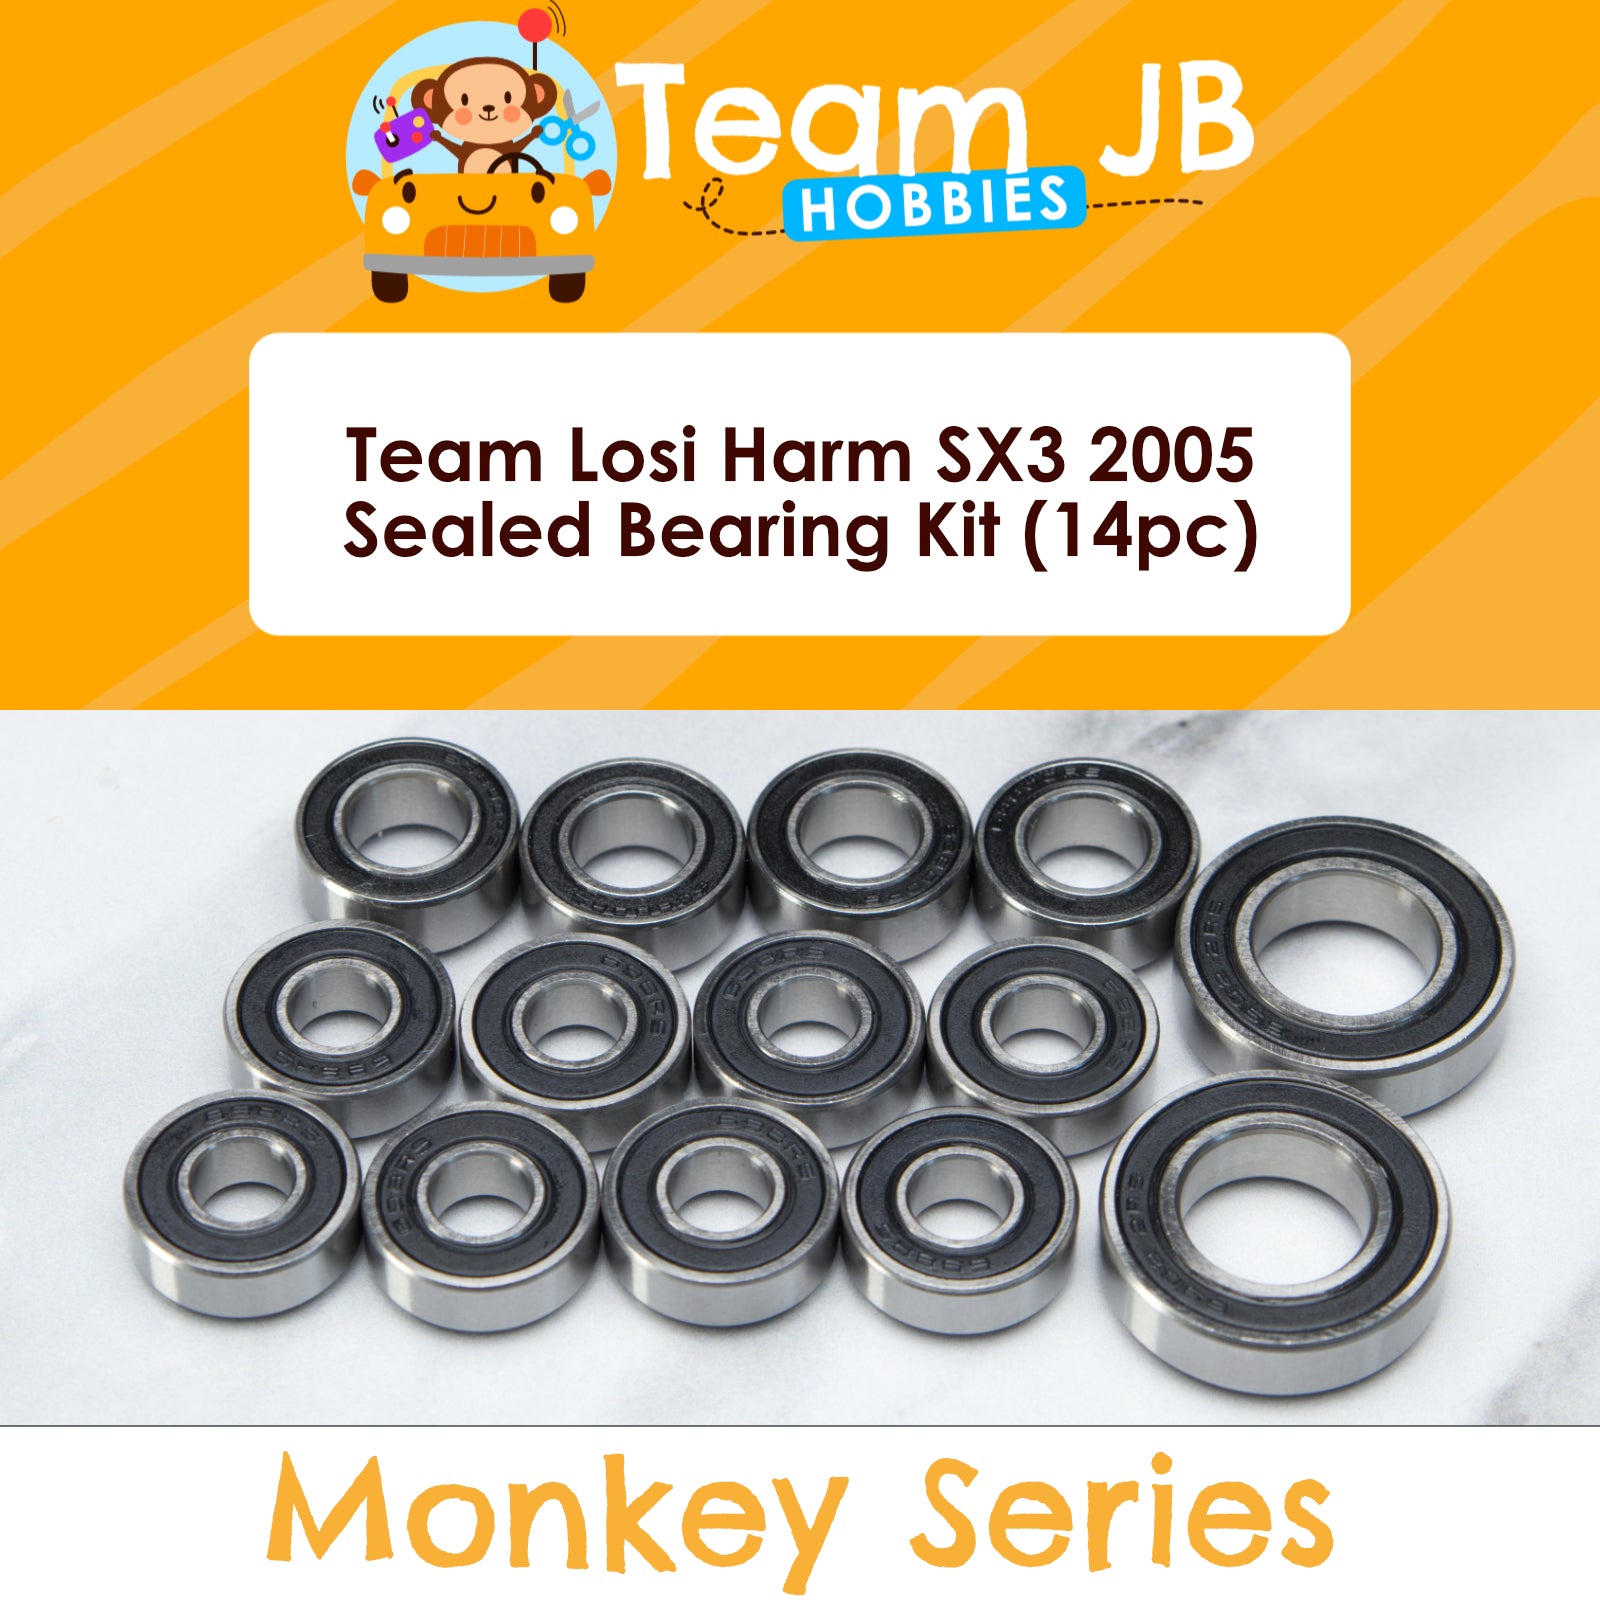 Team Losi Harm SX3 2005 - Sealed Bearing Kit